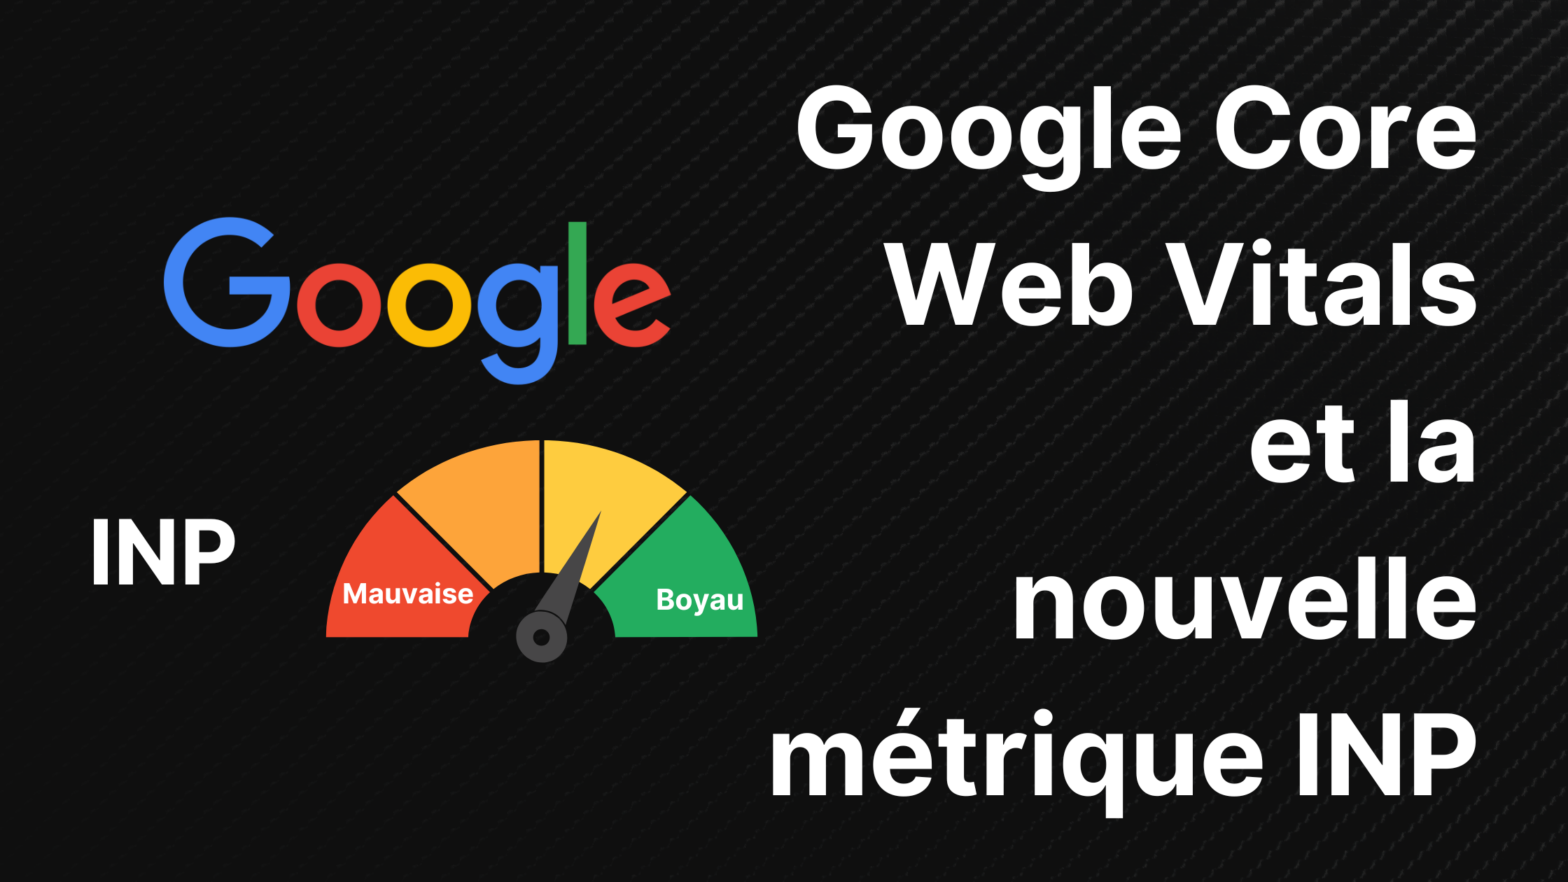 Google Core Web vitals et la métrique INP